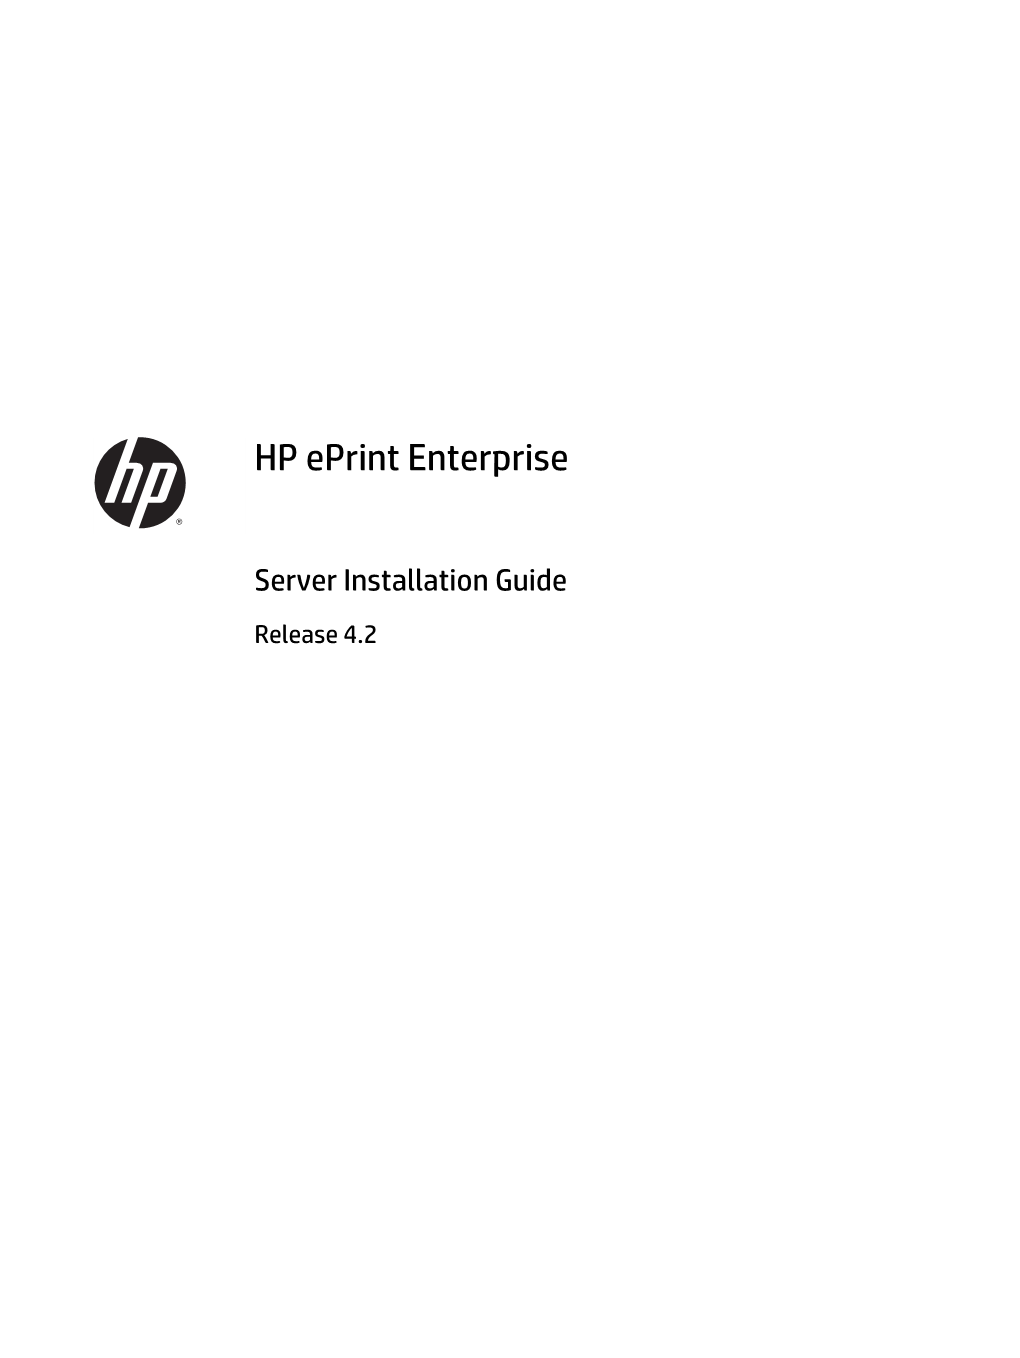 HP Eprint Enterprise Server Installation Guide